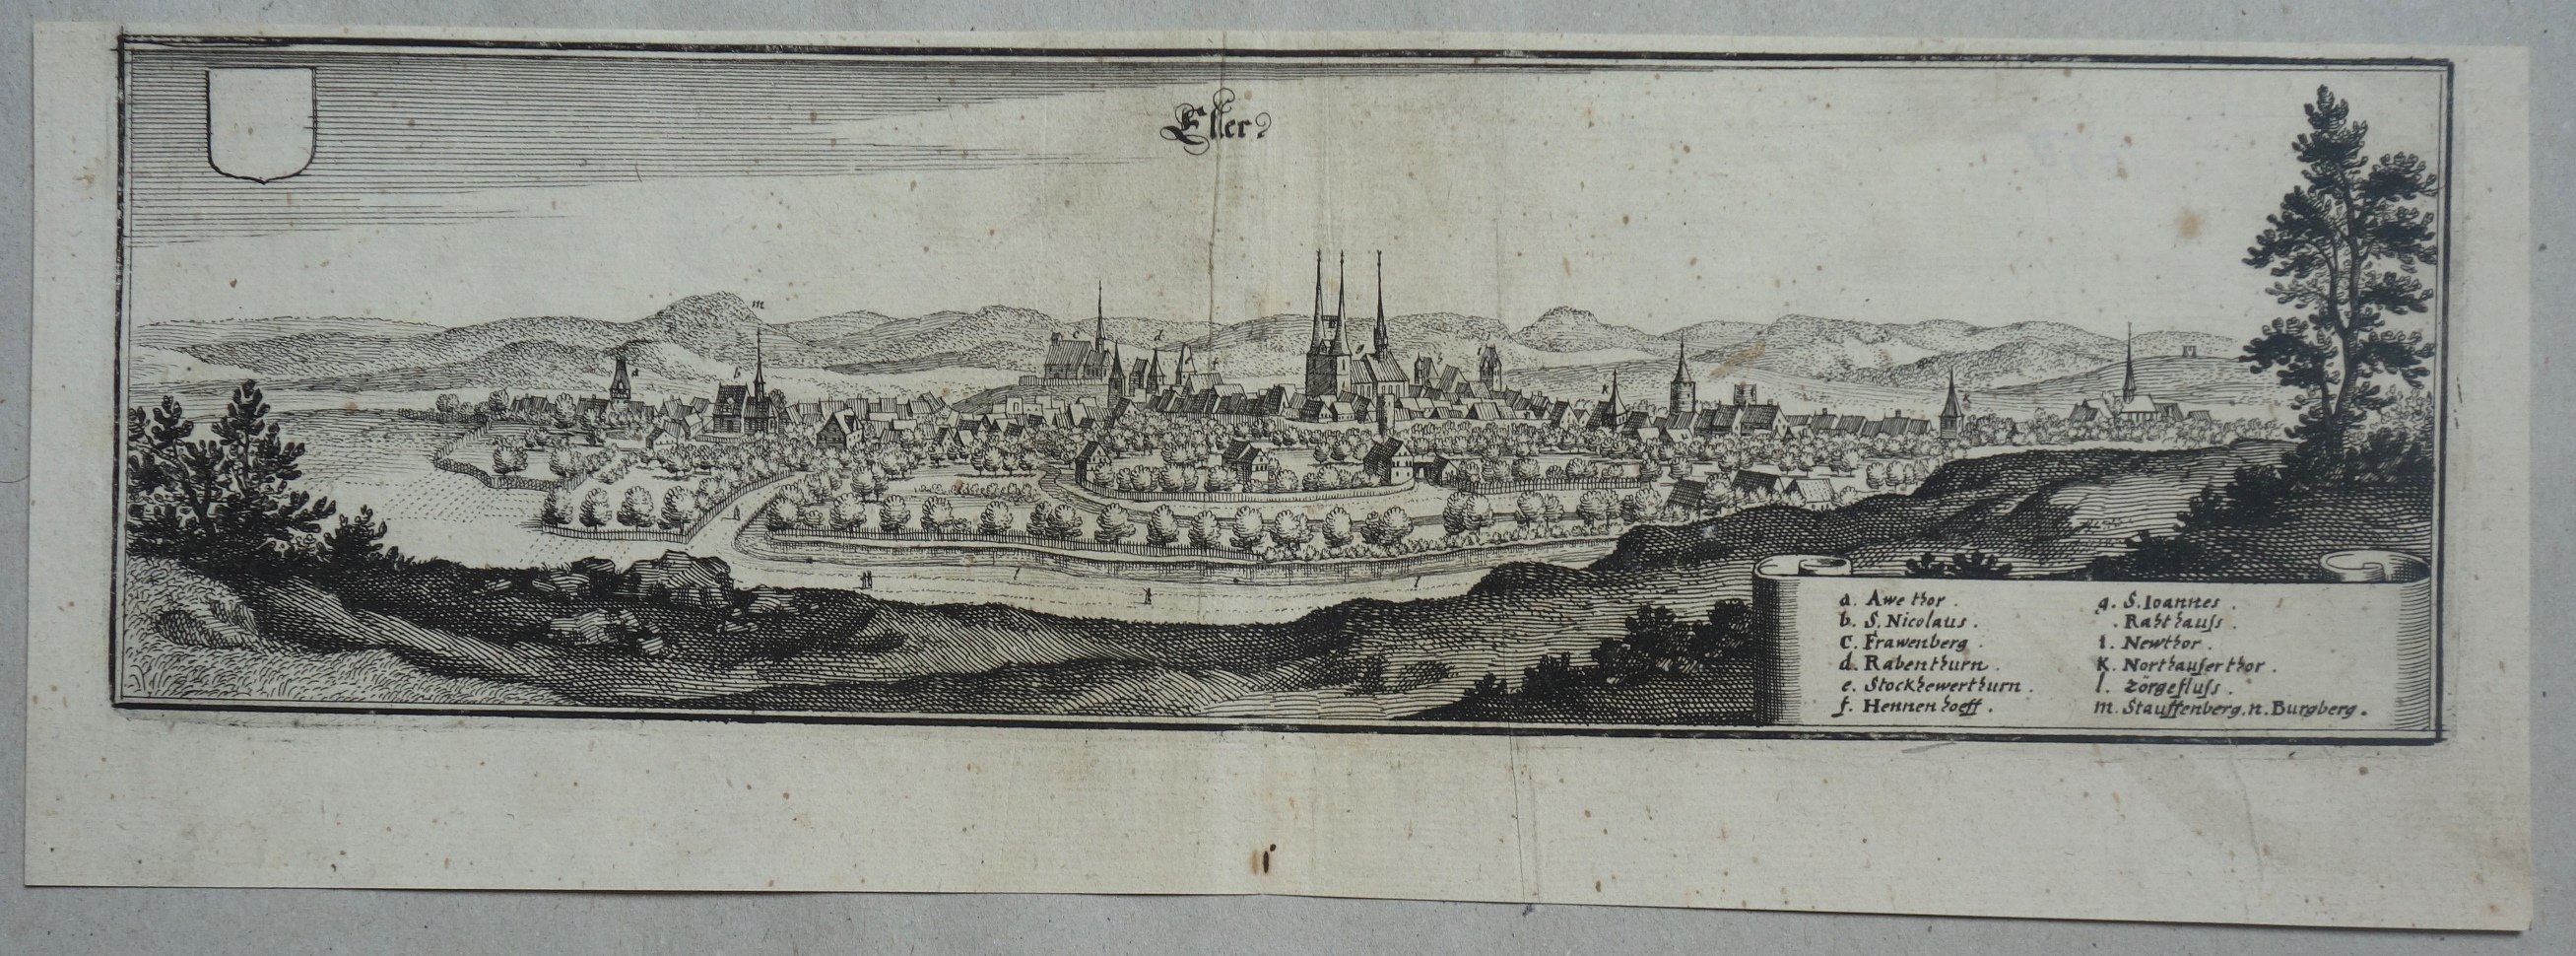 Ellrich: Stadt von Süden, im Hintergrund der Harz, 1650 (Aus: Merian "Topographia")e Sachsen Thüringen?) (Schloß Wernigerode GmbH RR-F)